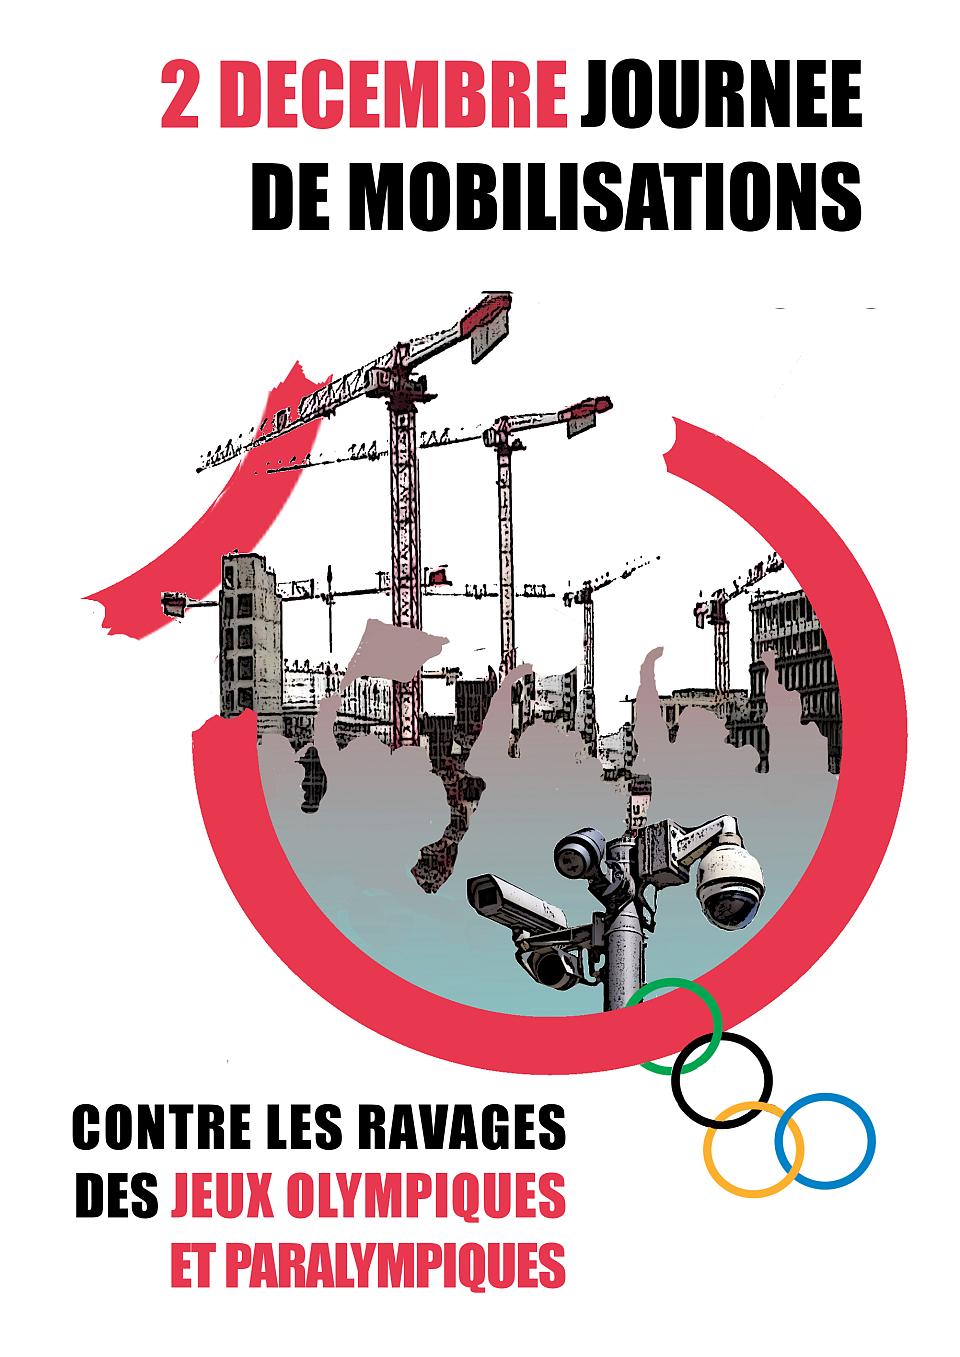 Des grues de chantier et des caméras de vidéosurveillance figurent sur cette affiche appelant à une journée de mobilisation le 2 décembre contre les ravages des Jeux olympiques et paralympiques